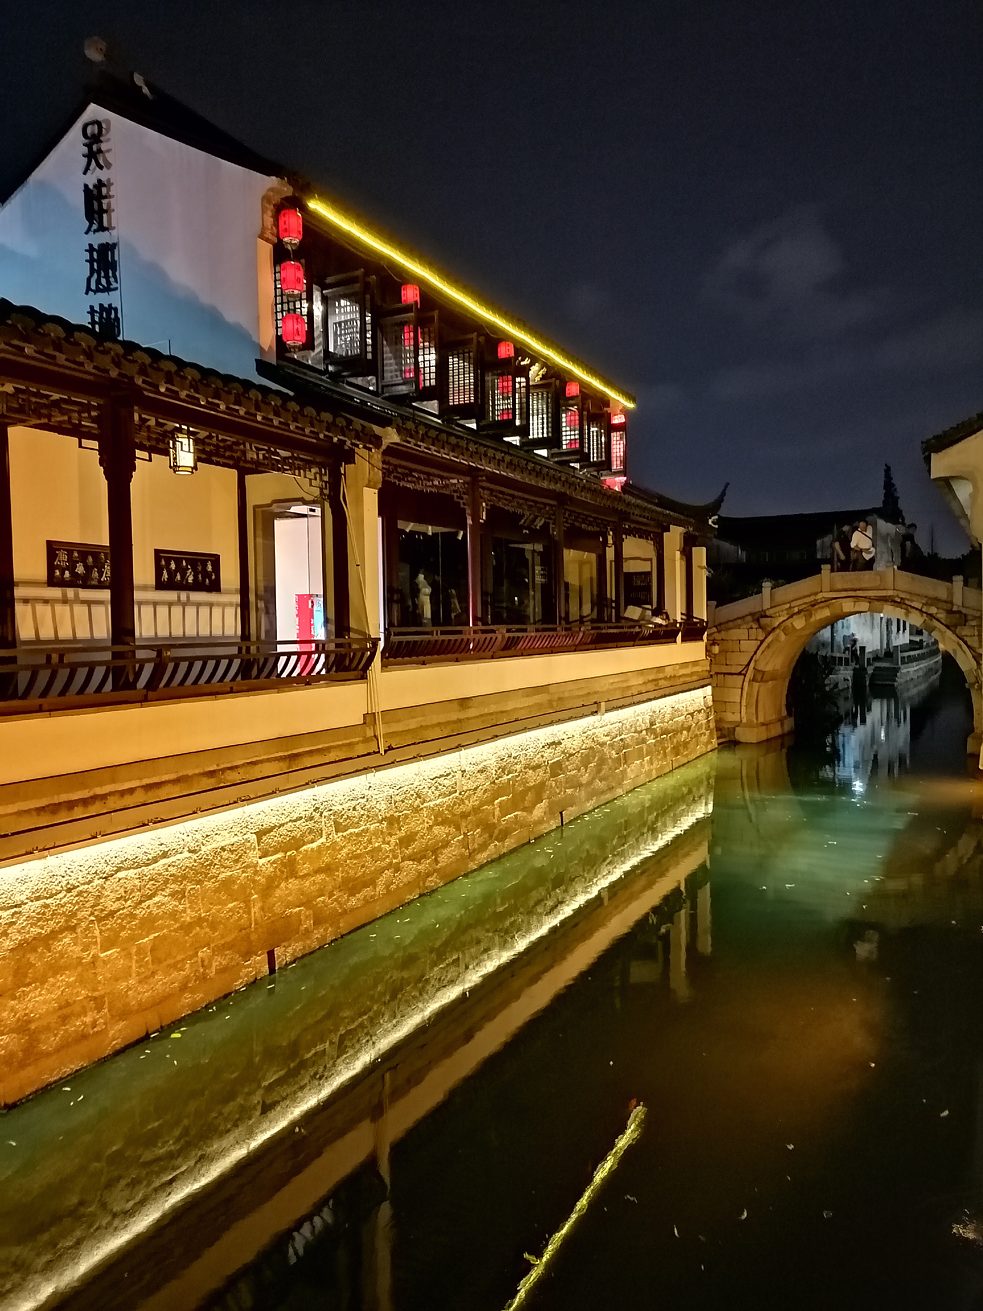 Schön beleuchtet ist auch der Kanal der Pingjiang Straße